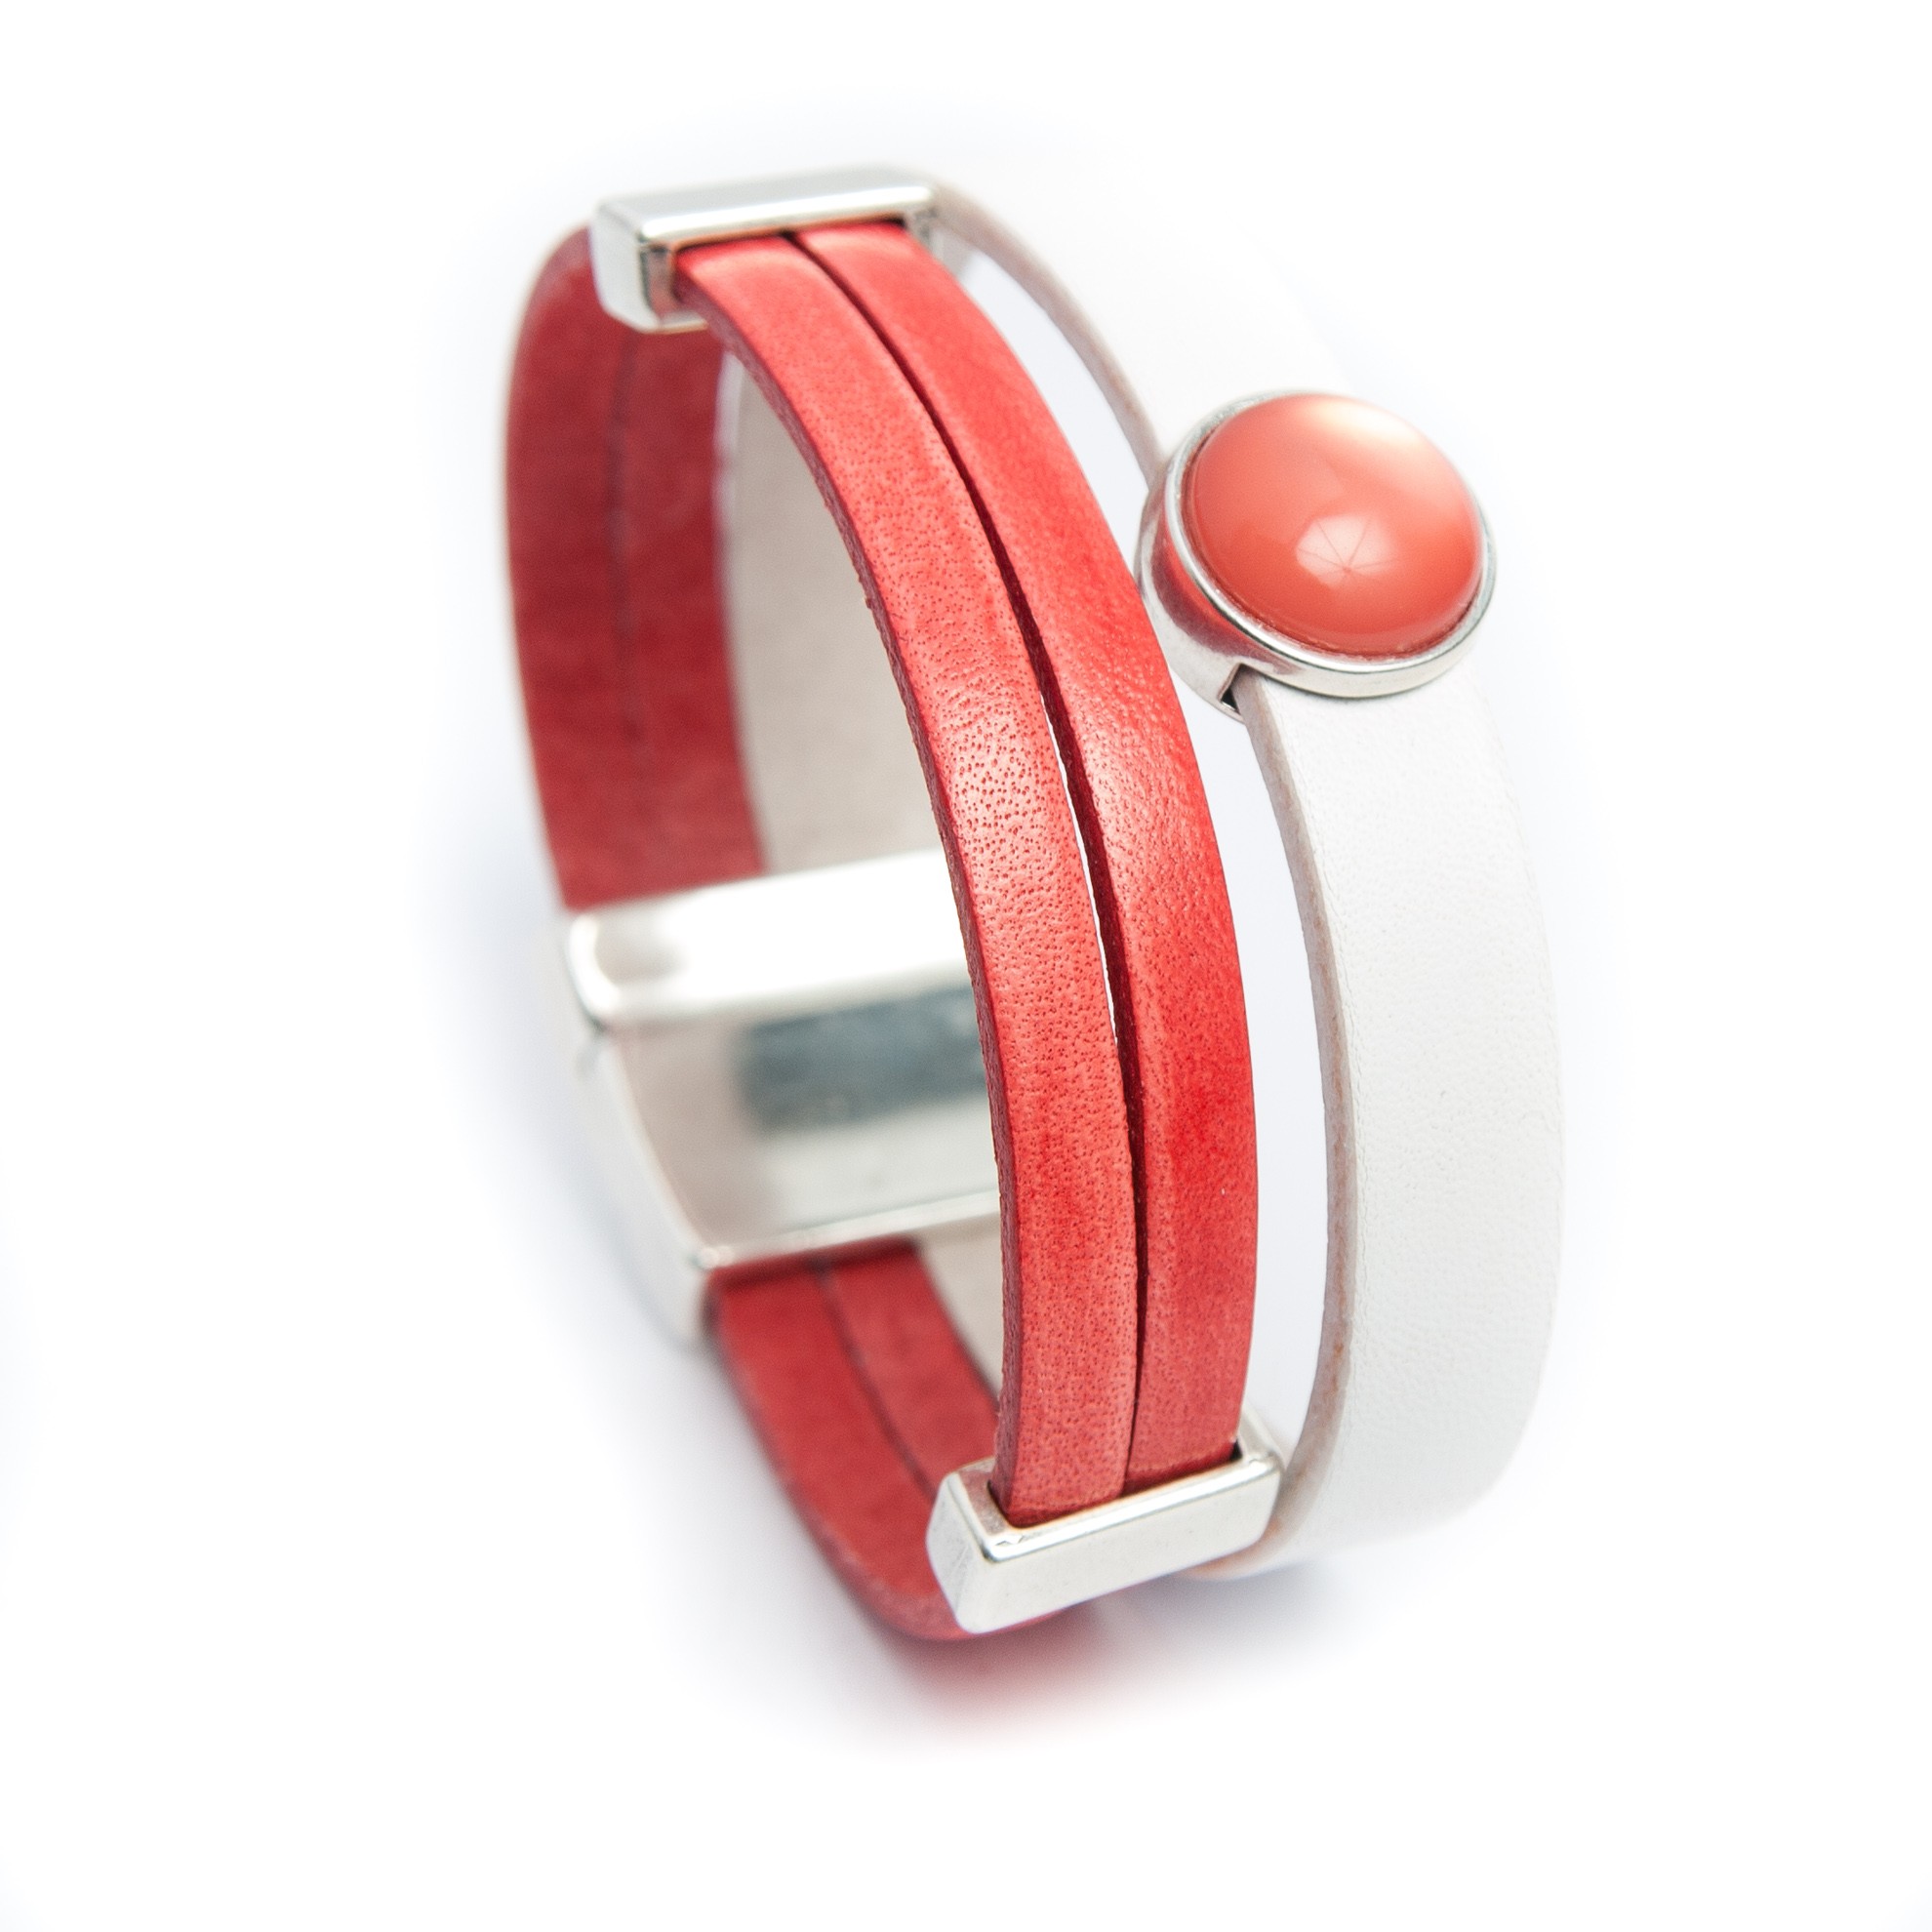 Bracelet cuir cordons rouge et tubes argentés - Anne-louise Colrat